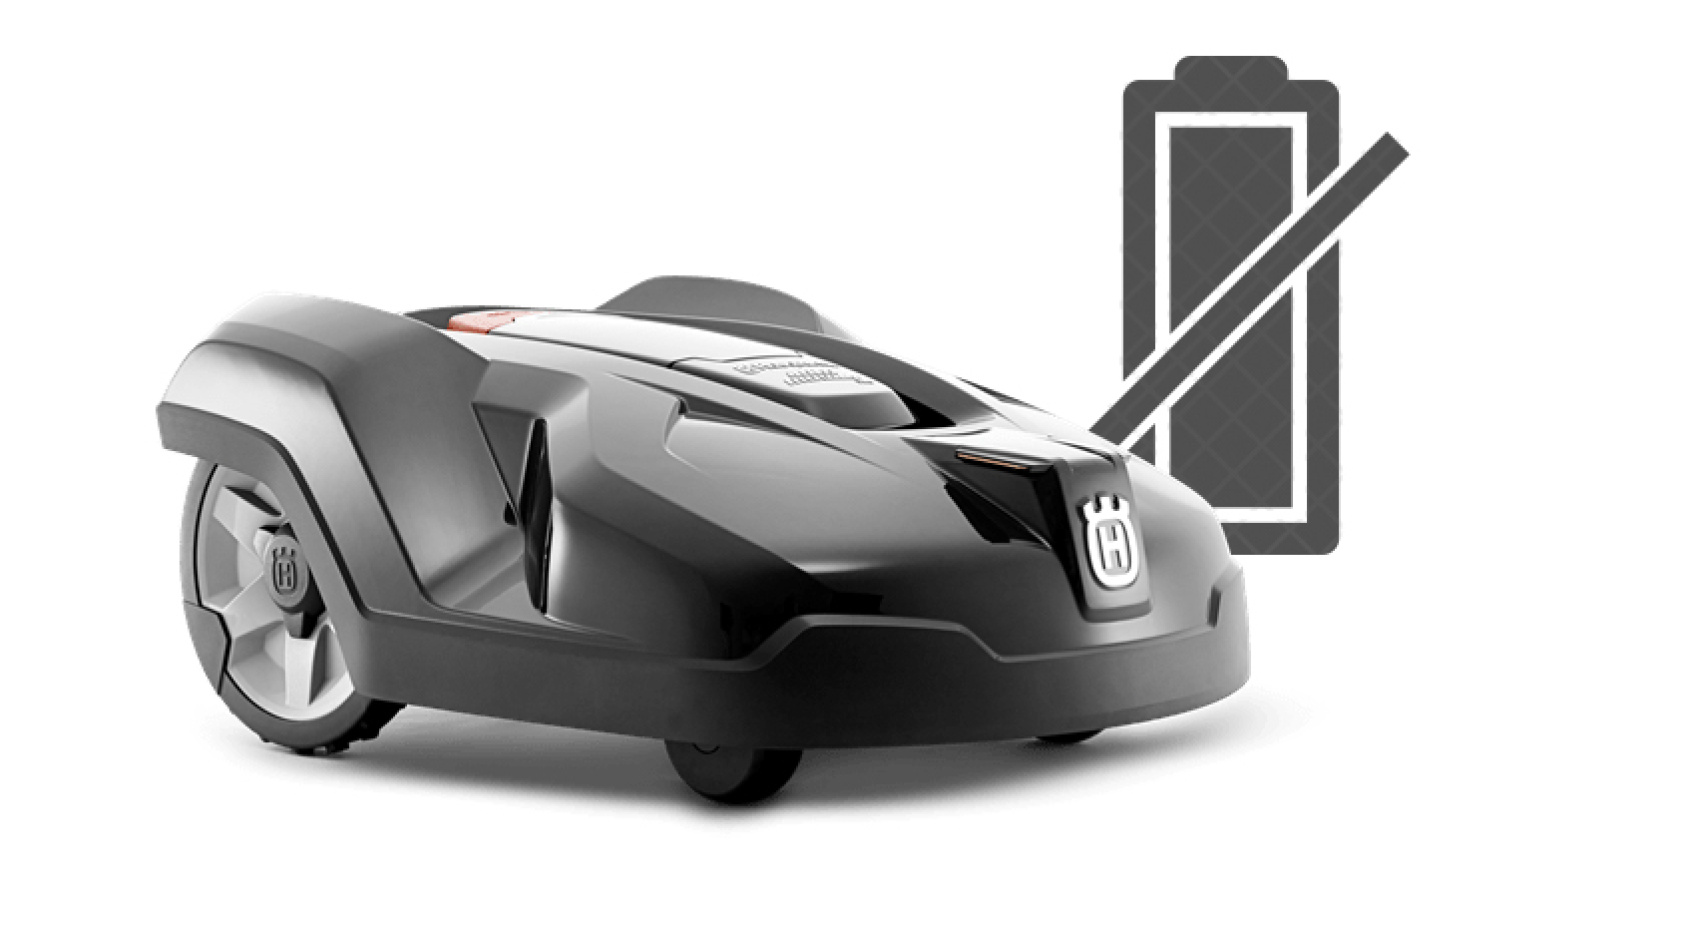 Fejlmelding ”Tomt batteri” på Husqvarna Automower